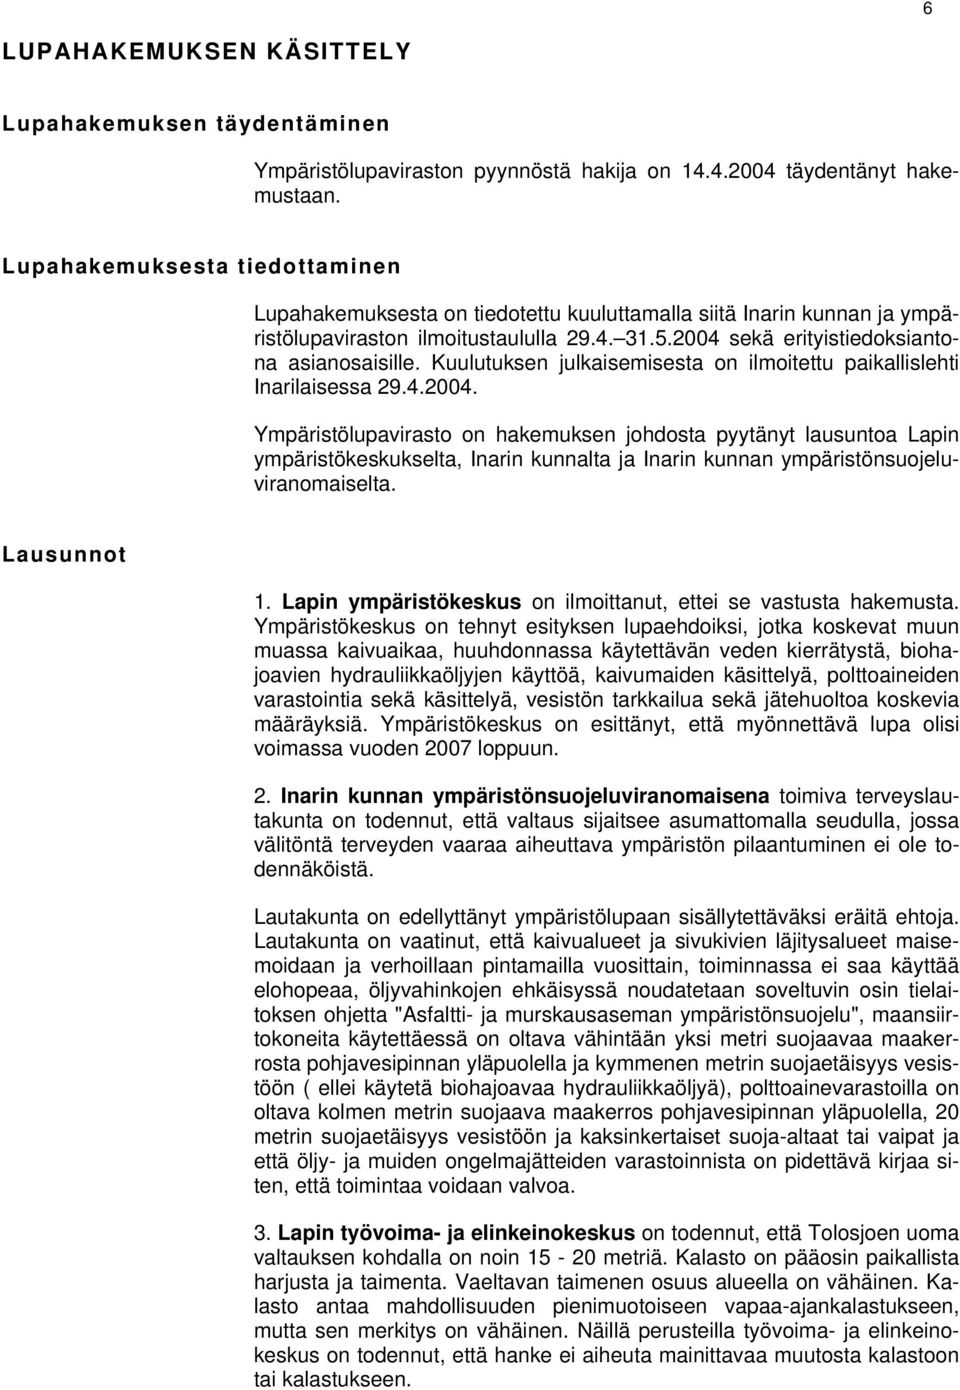 Kuulutuksen julkaisemisesta on ilmoitettu paikallislehti Inarilaisessa 29.4.2004.